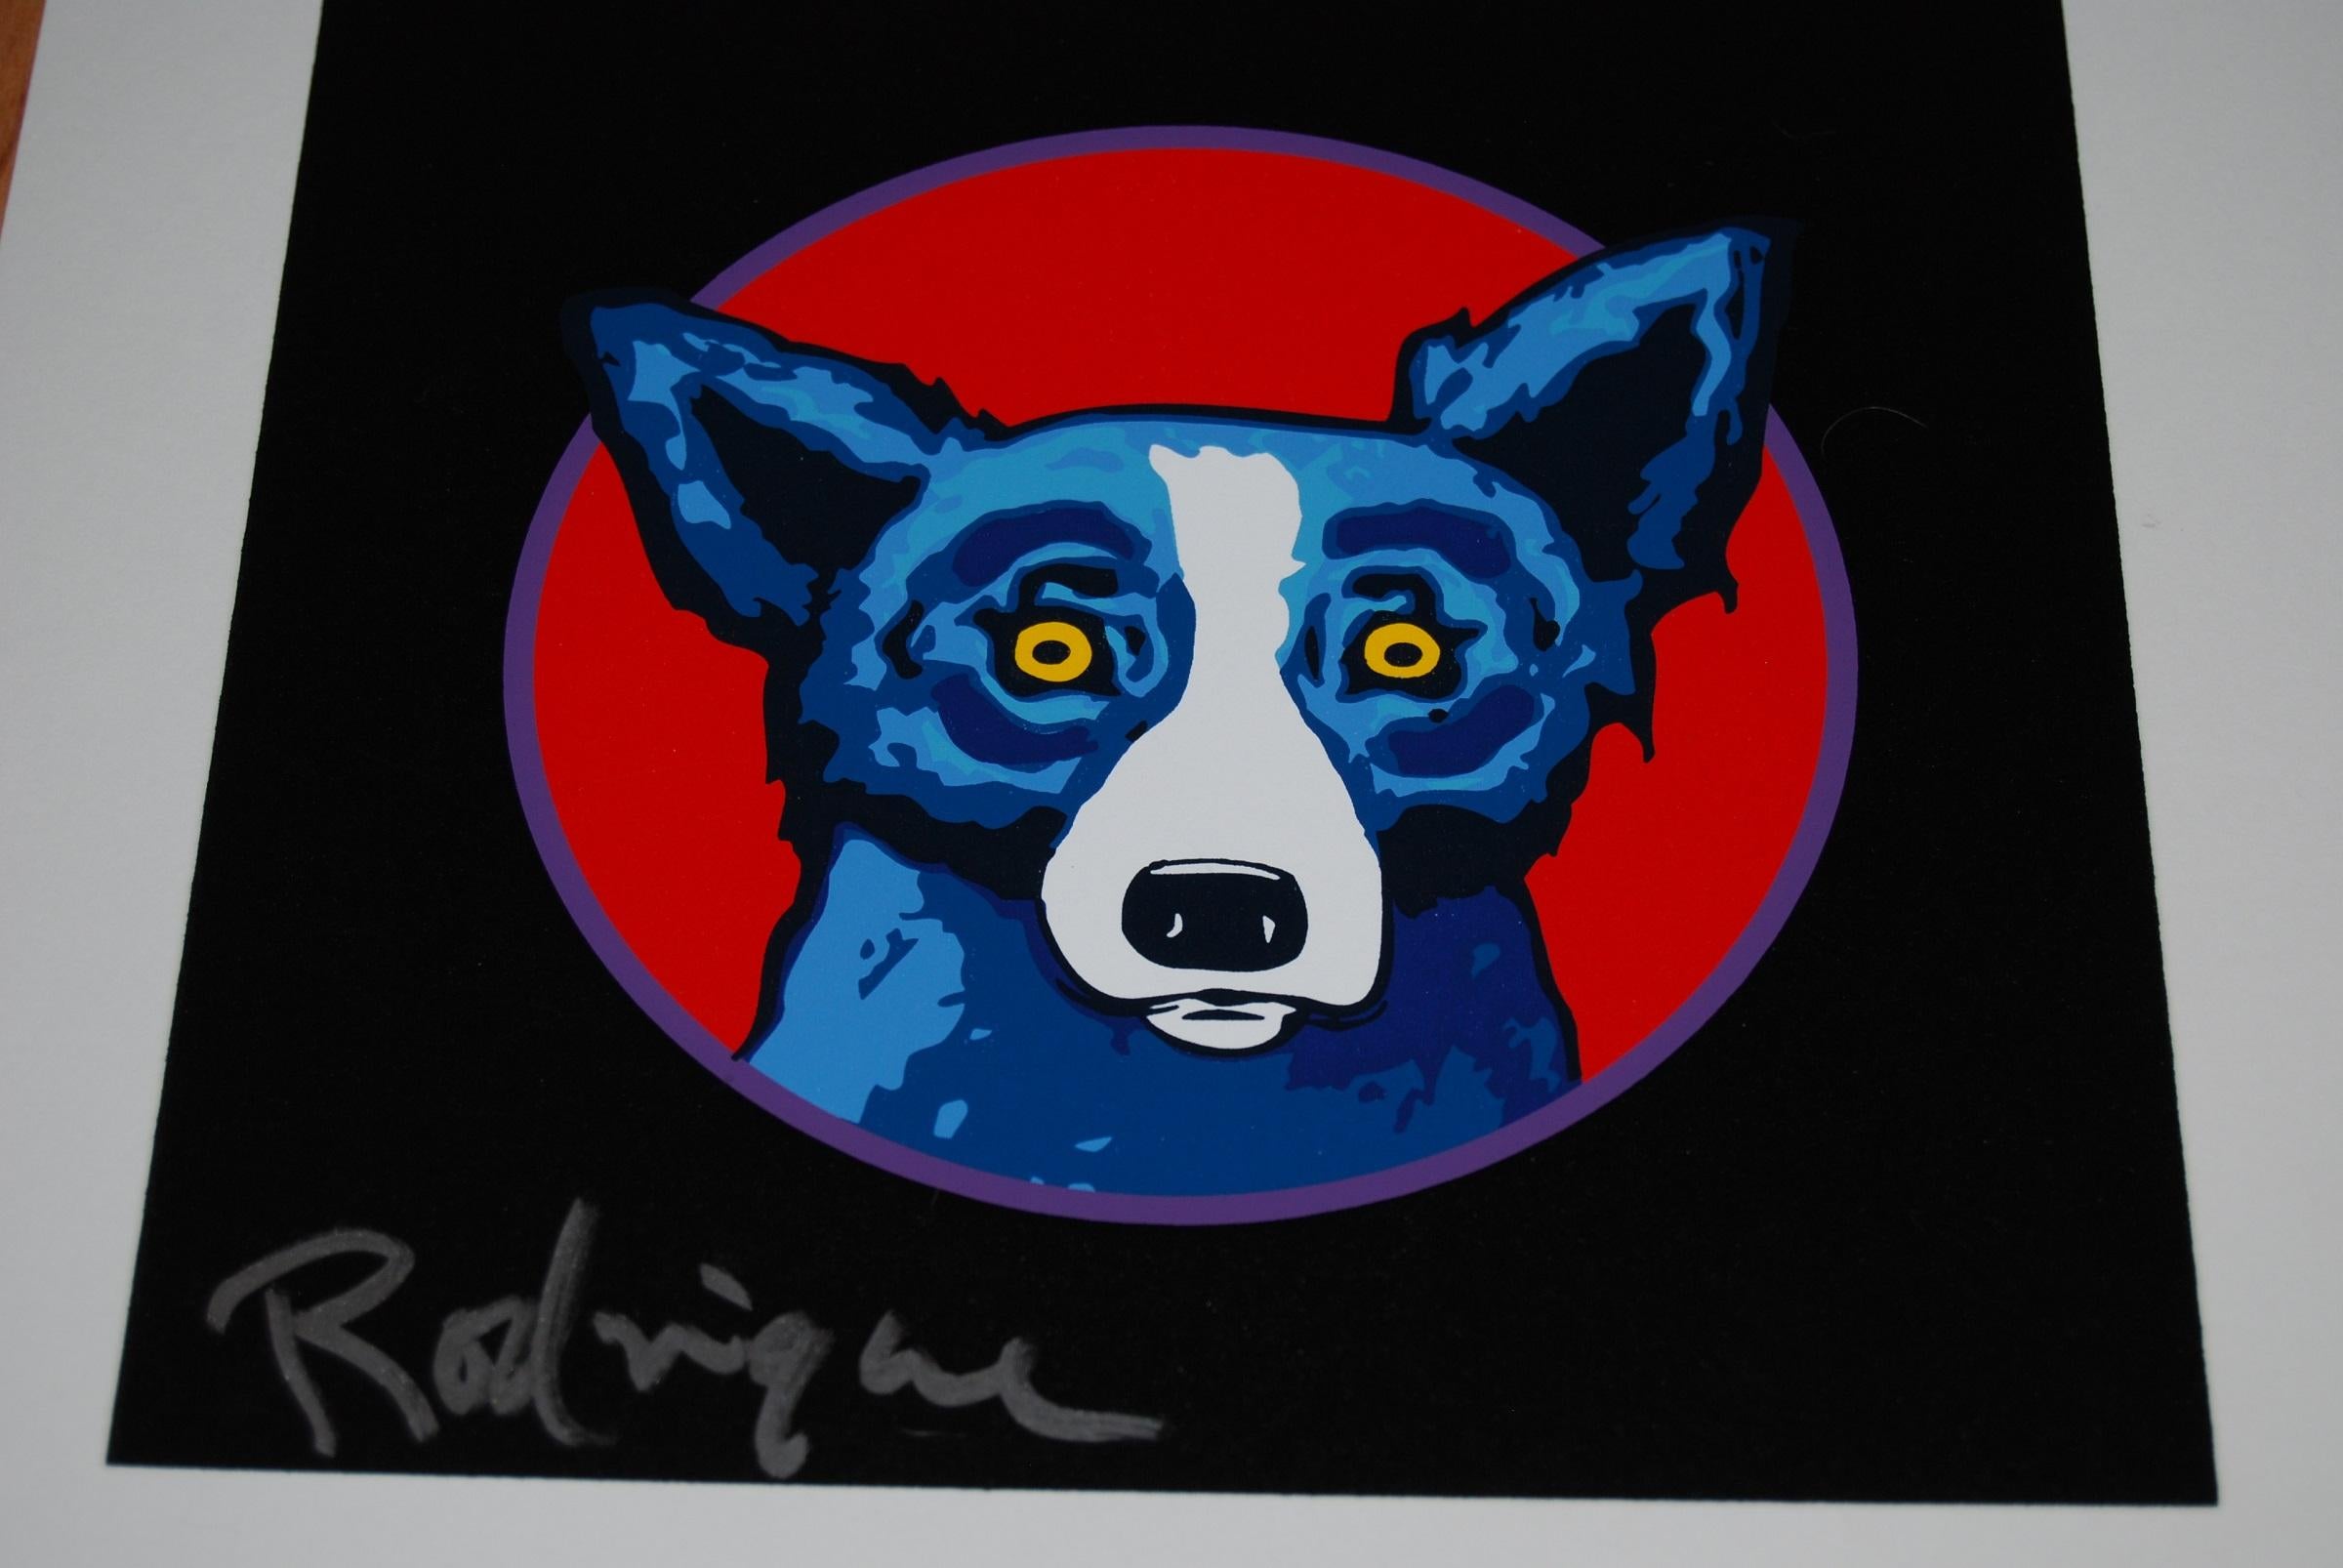 Dieses Blue Dog Werk besteht aus 4 Rahmen mit jeweils einem Hund und verschiedenfarbigen Hintergründen. Eines ist ein roter Hintergrund mit gelber Mitte, eines ist ein lila Hintergrund mit gelber Mitte, eines ist ein schwarzer Hintergrund mit roter